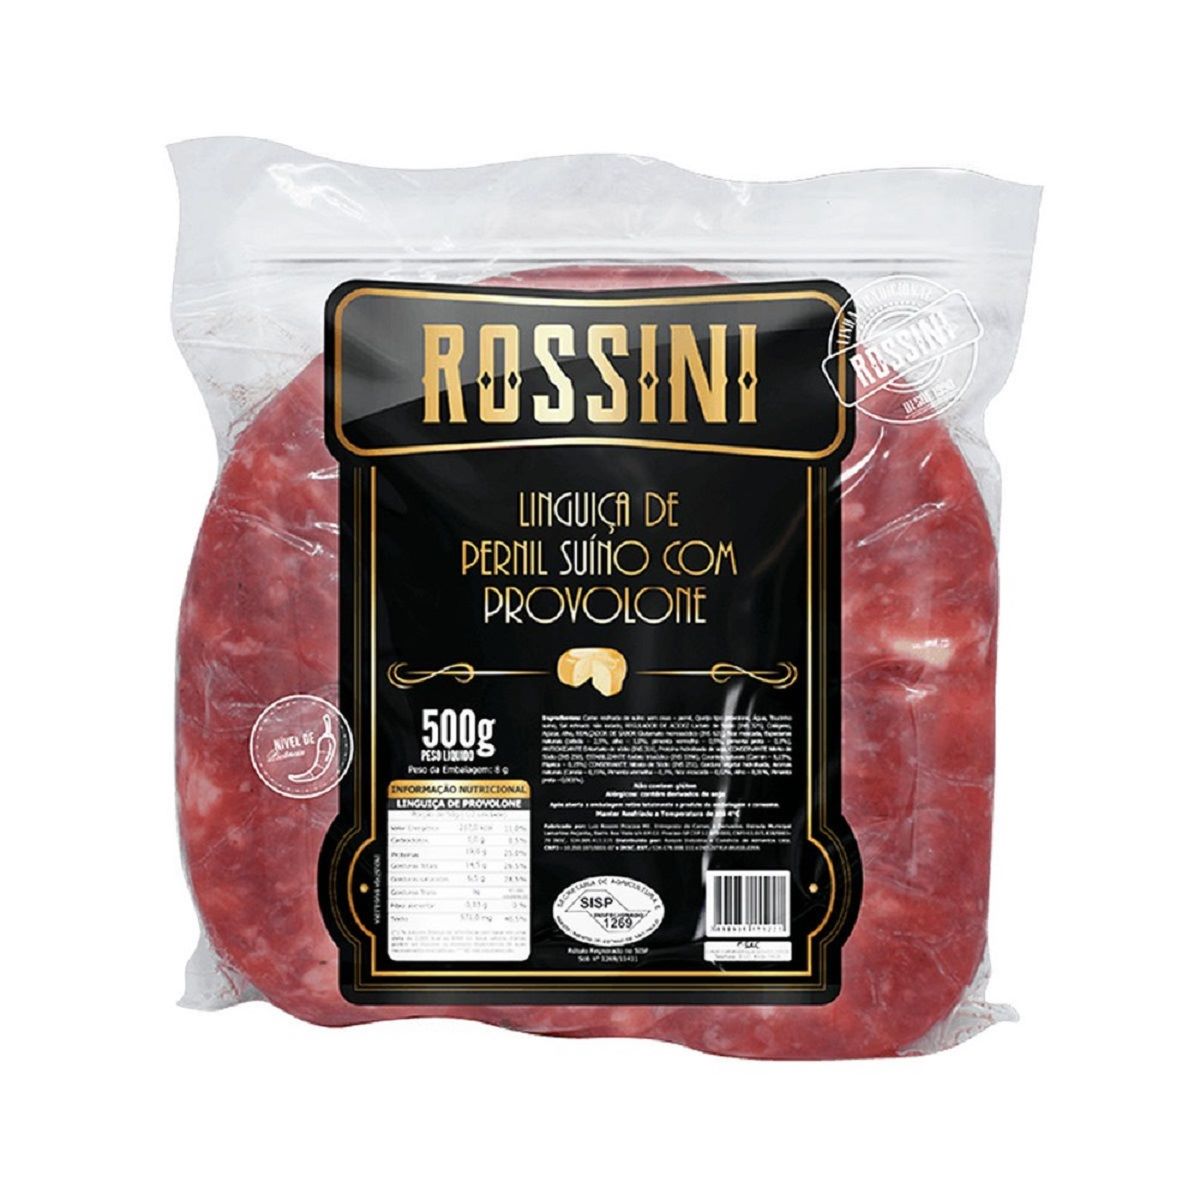 linguica-de-pernil-com-provolone-e-bacon-rossini-500-g-1.jpg